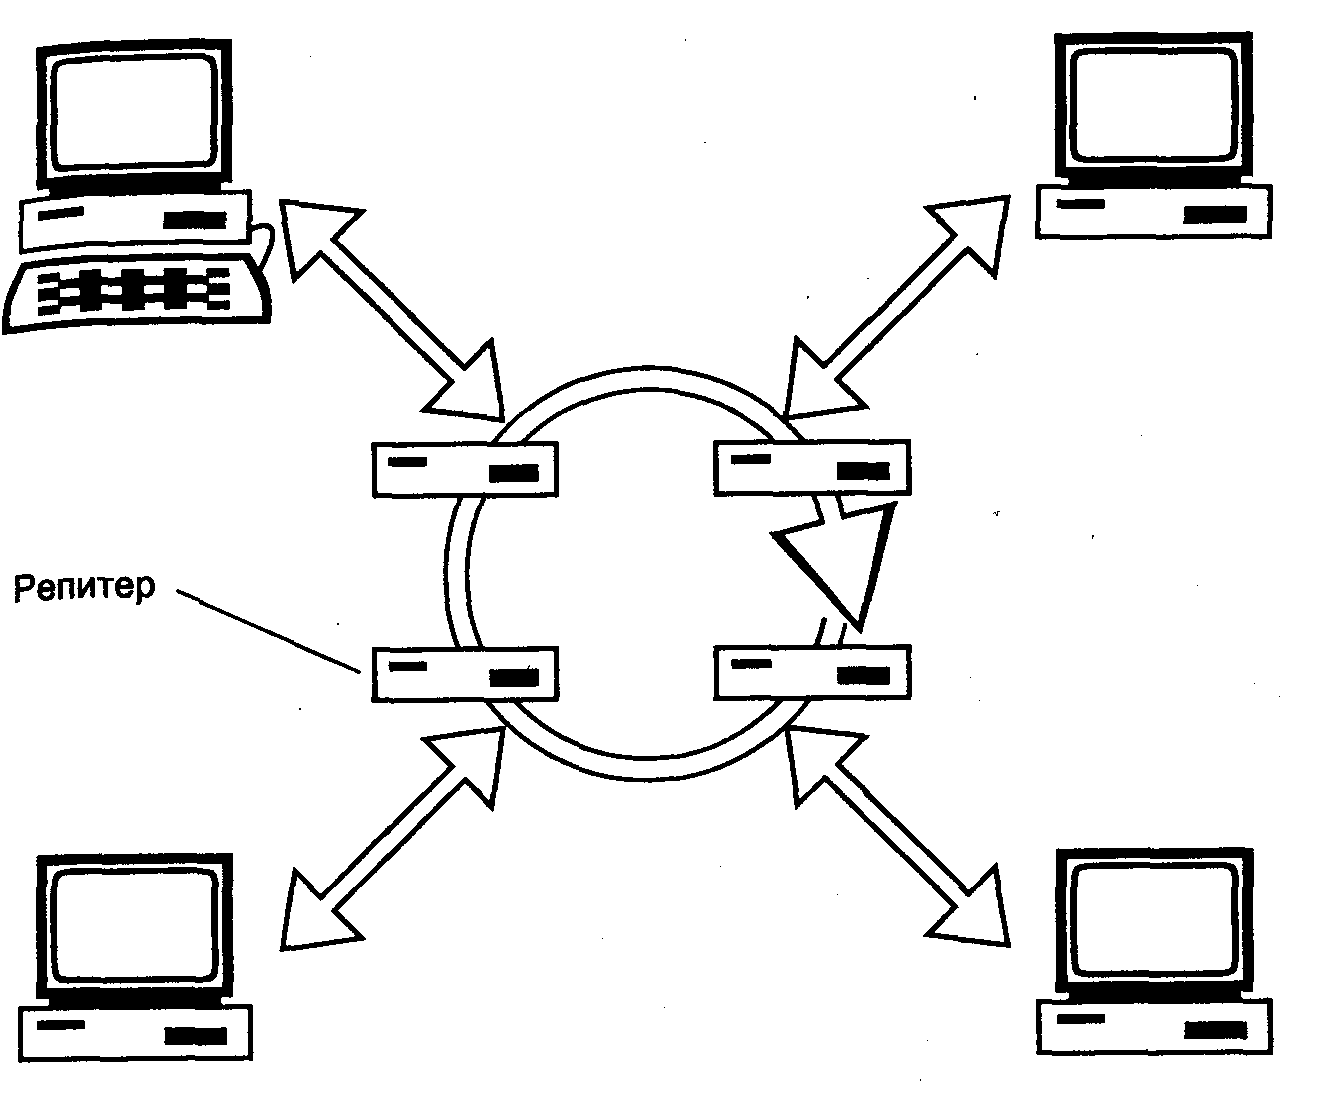 Окружения сети. Топология локальных сетей кольцо. Топология кольцо схема Netcracker. Кольцевая топология сети. Кольцевая топология компьютерной сети.